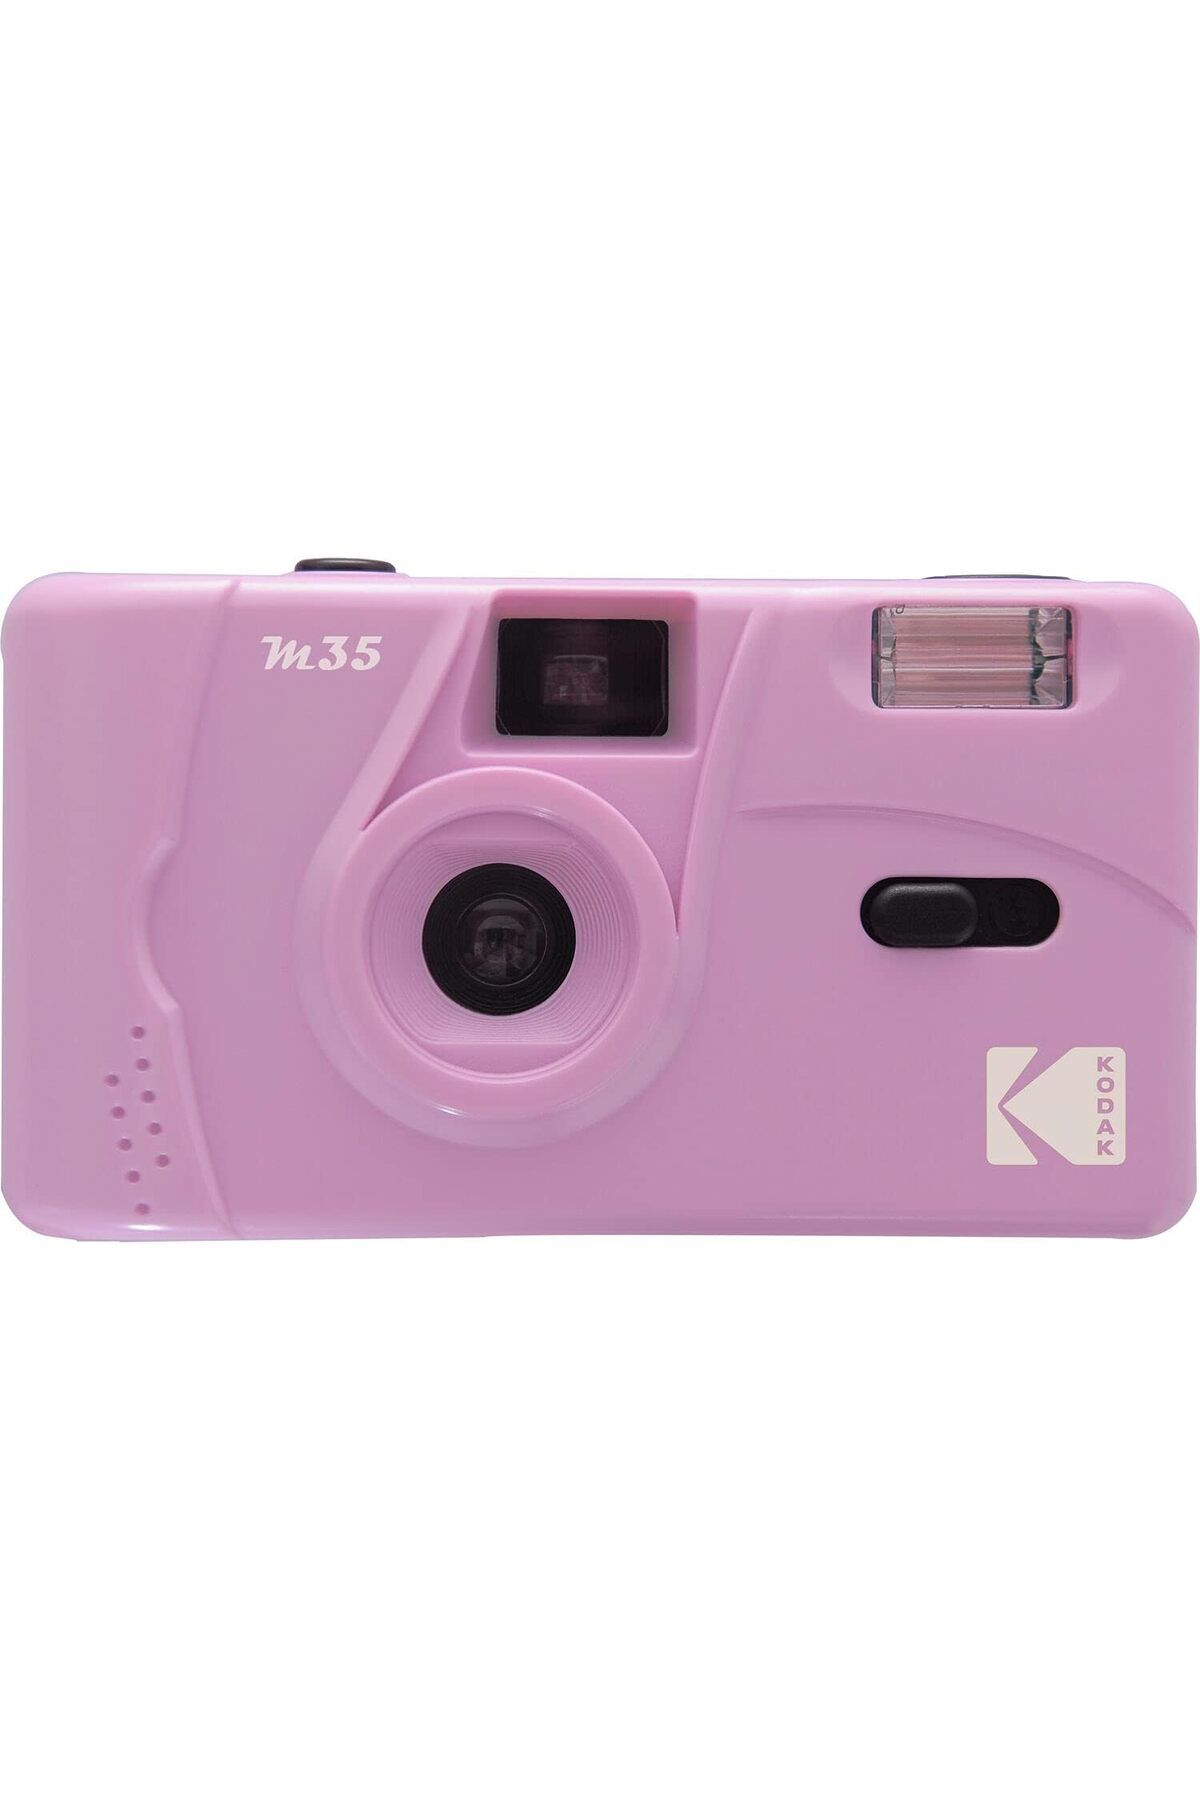 Kodak M35 35 mm Tekrar Kullanılabilir Film Kamerası, Lila Renk Seçeneği İle